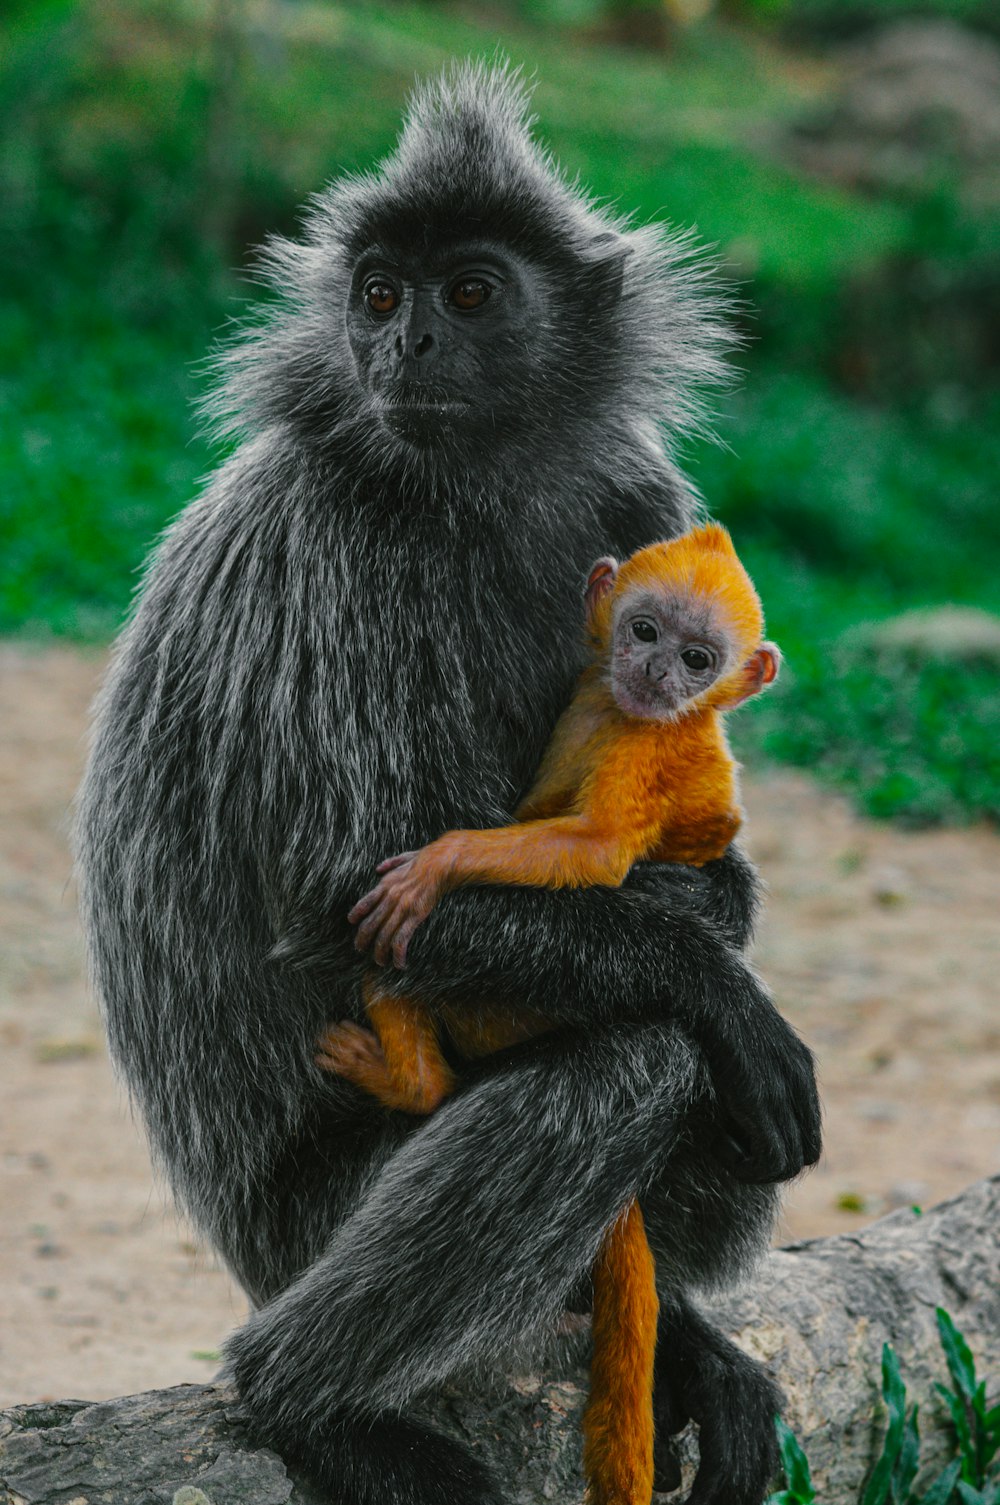 black and white monkey eating orange fruit during daytime